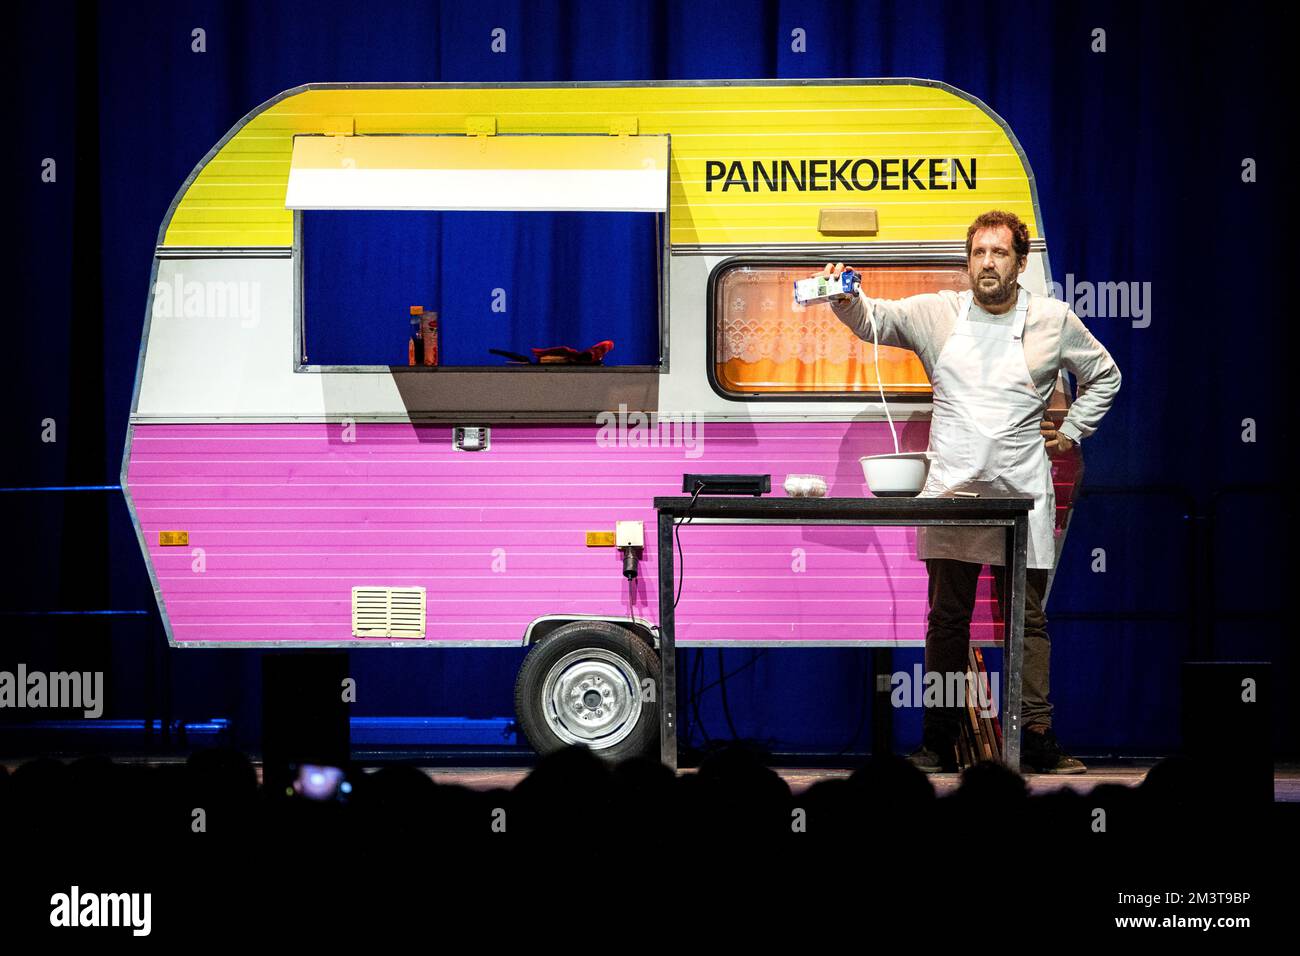 AMSTERDAM - Marcel van Roosmalen and Gijs Groenteman during the last performance of their theater show De Pannekoekencaravan in AFAS Live. ANP RAMON VAN FLYMEN netherlands out - belgium out Stock Photo